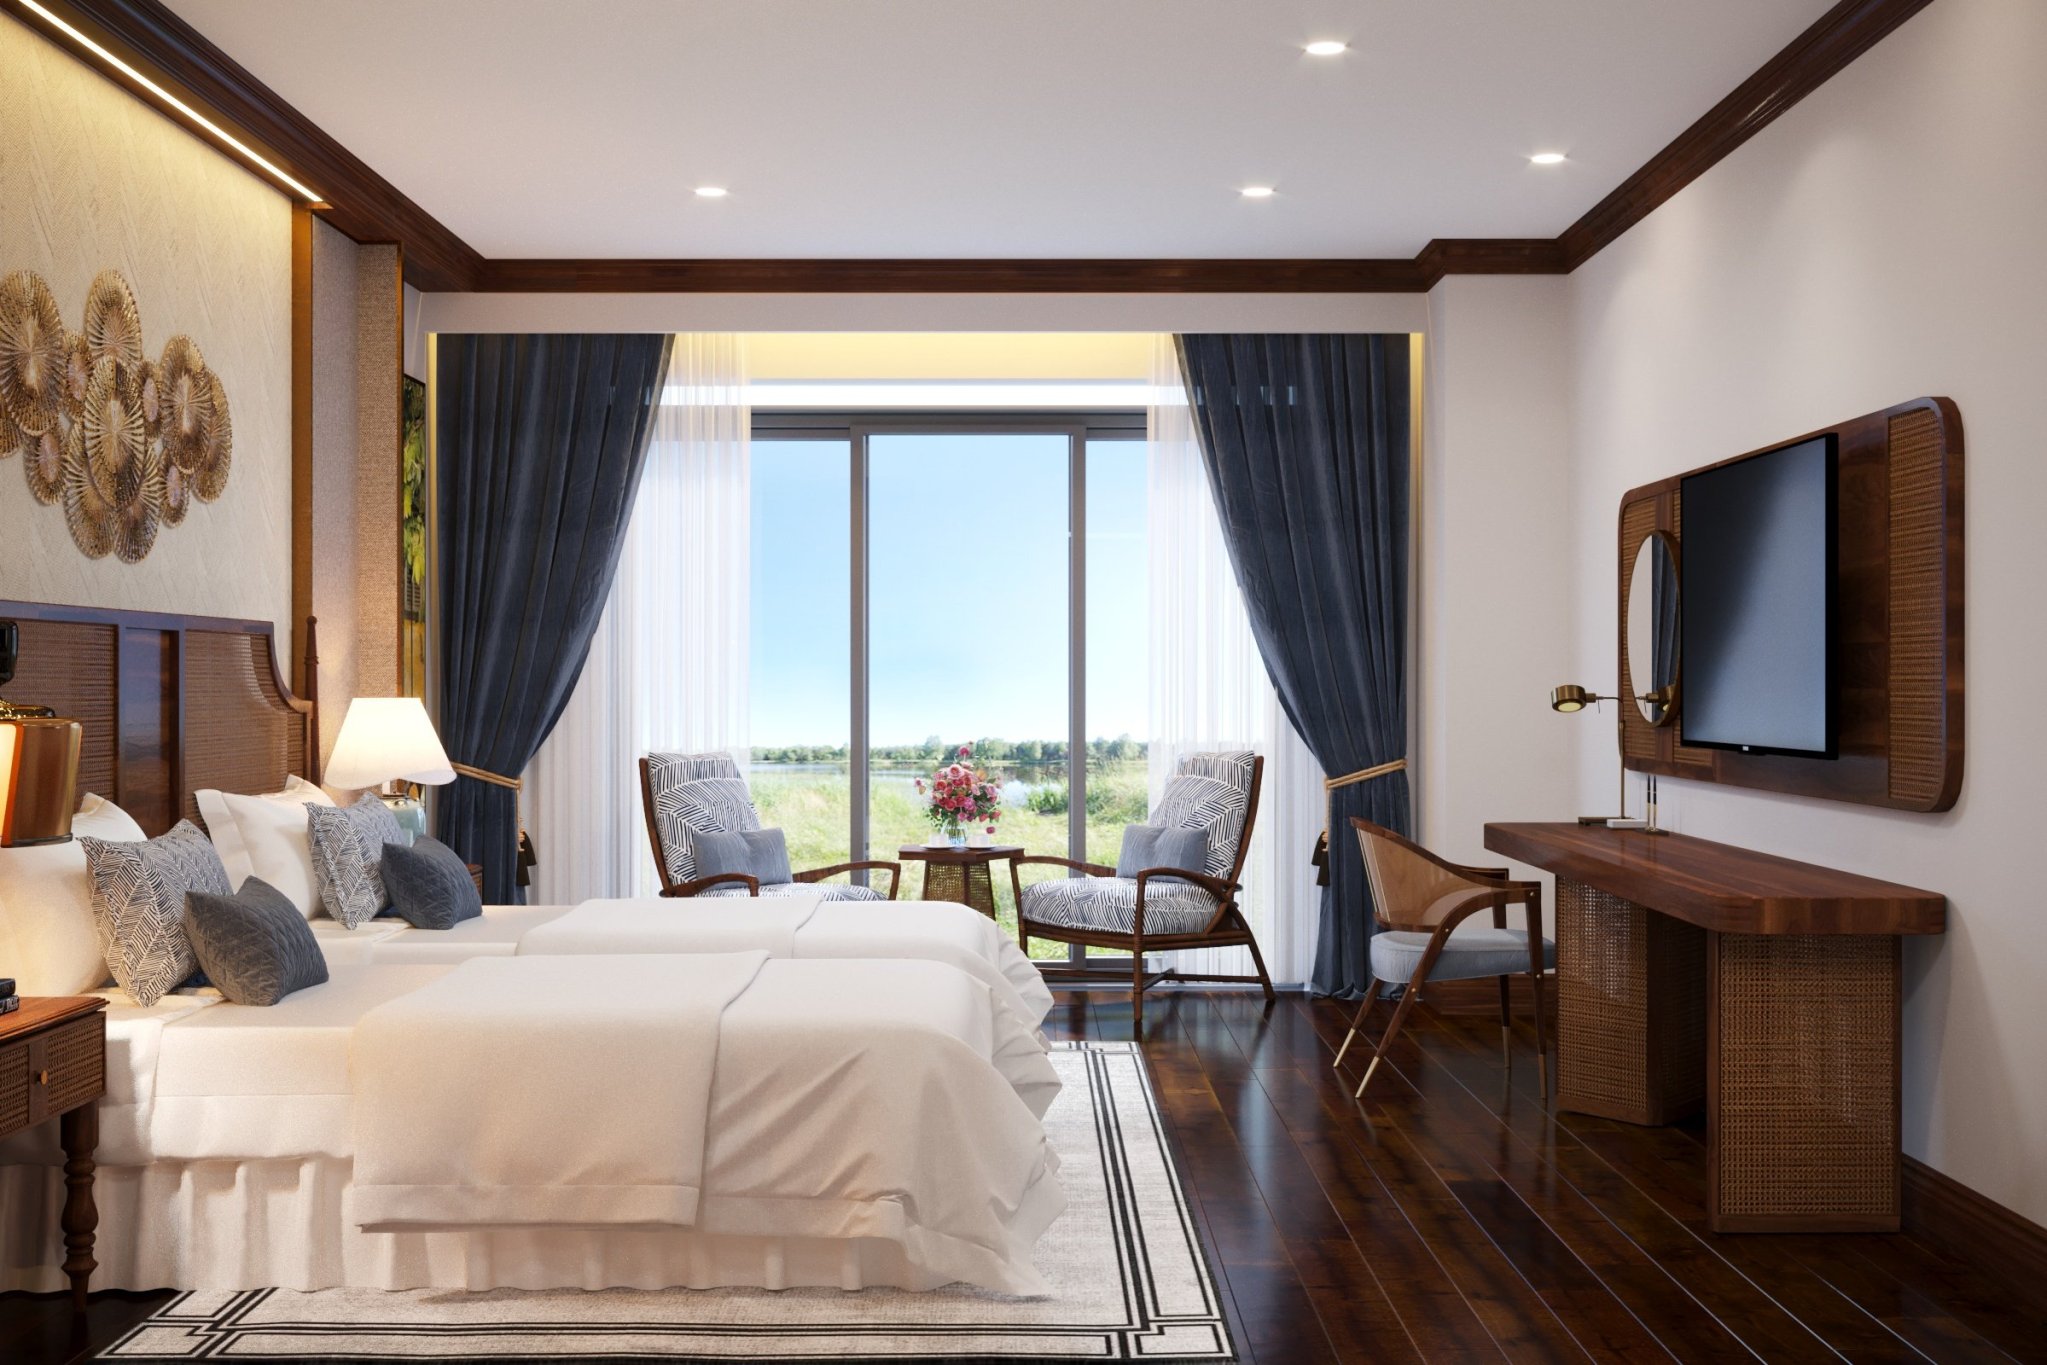 Phòng ngủ, phong cách Indochine Đông Dương, thiết kế concept nội thất, nhà phố Nguyễn Trãi Quận 5